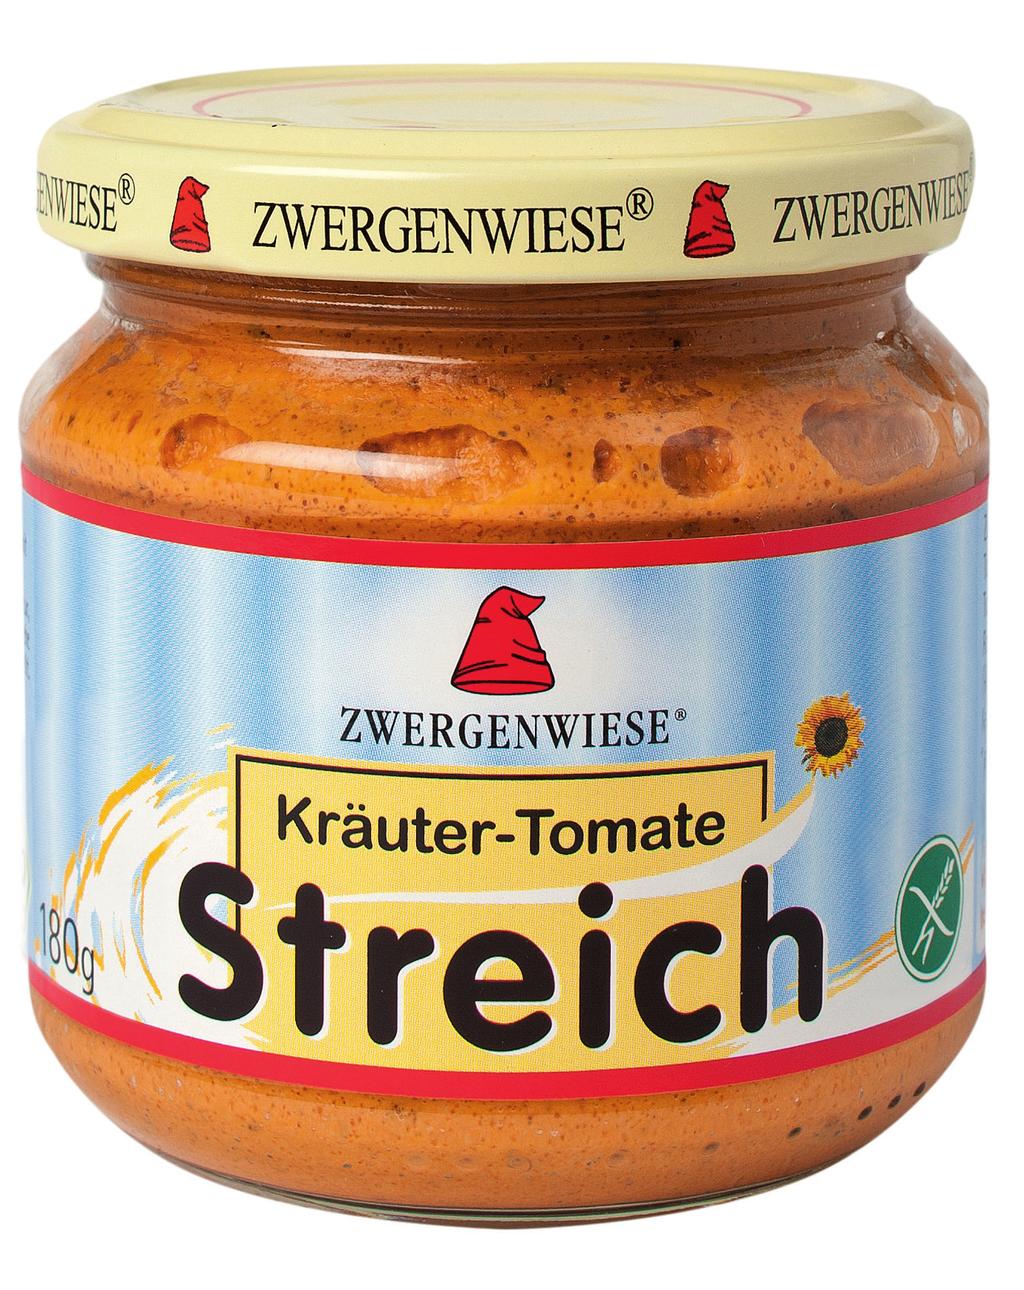 glutenfri Zwergenwieses Streich smørepålæg Vejl.